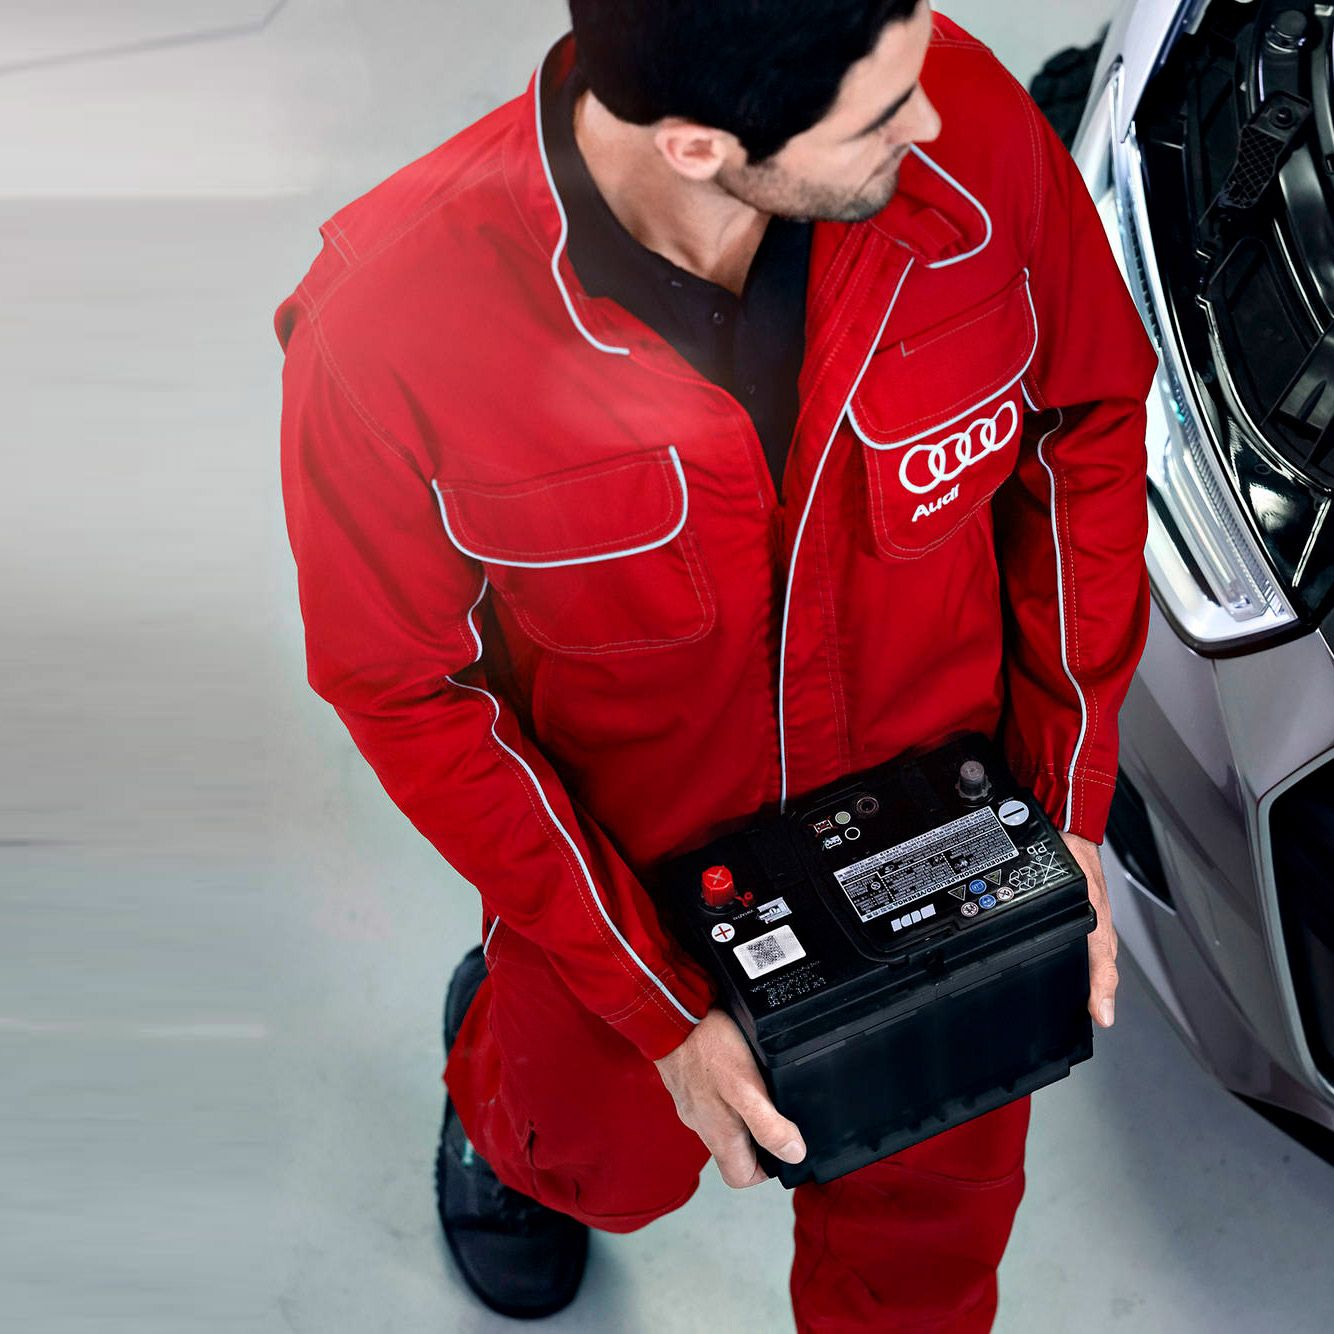 Ein Audi Service Techniker beim Tausch einer Starterbatterie